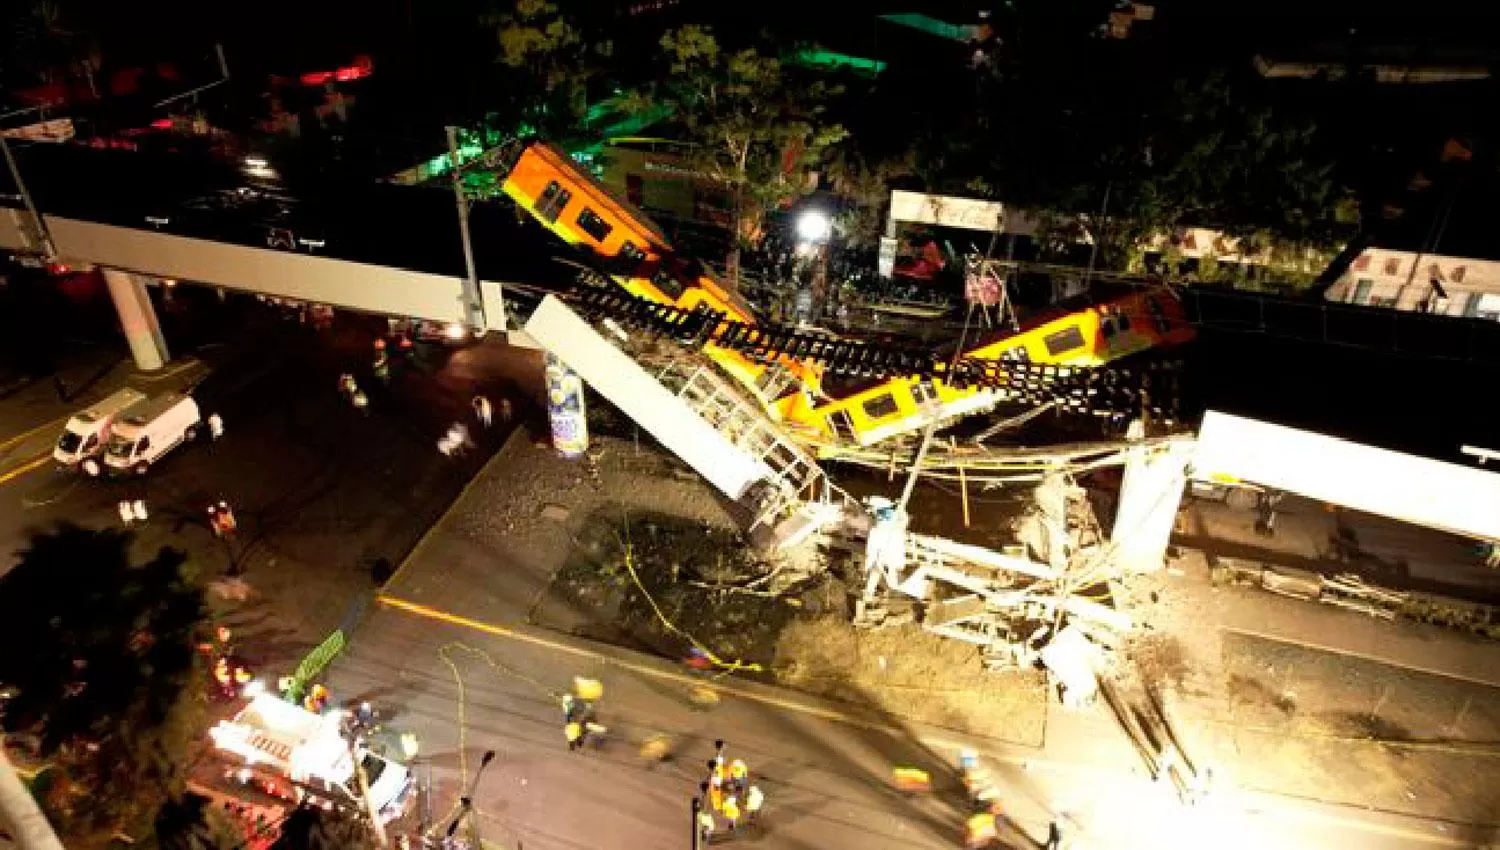 Cancillería envió condolencias a familiares de las víctimas por el accidente ferroviario en México